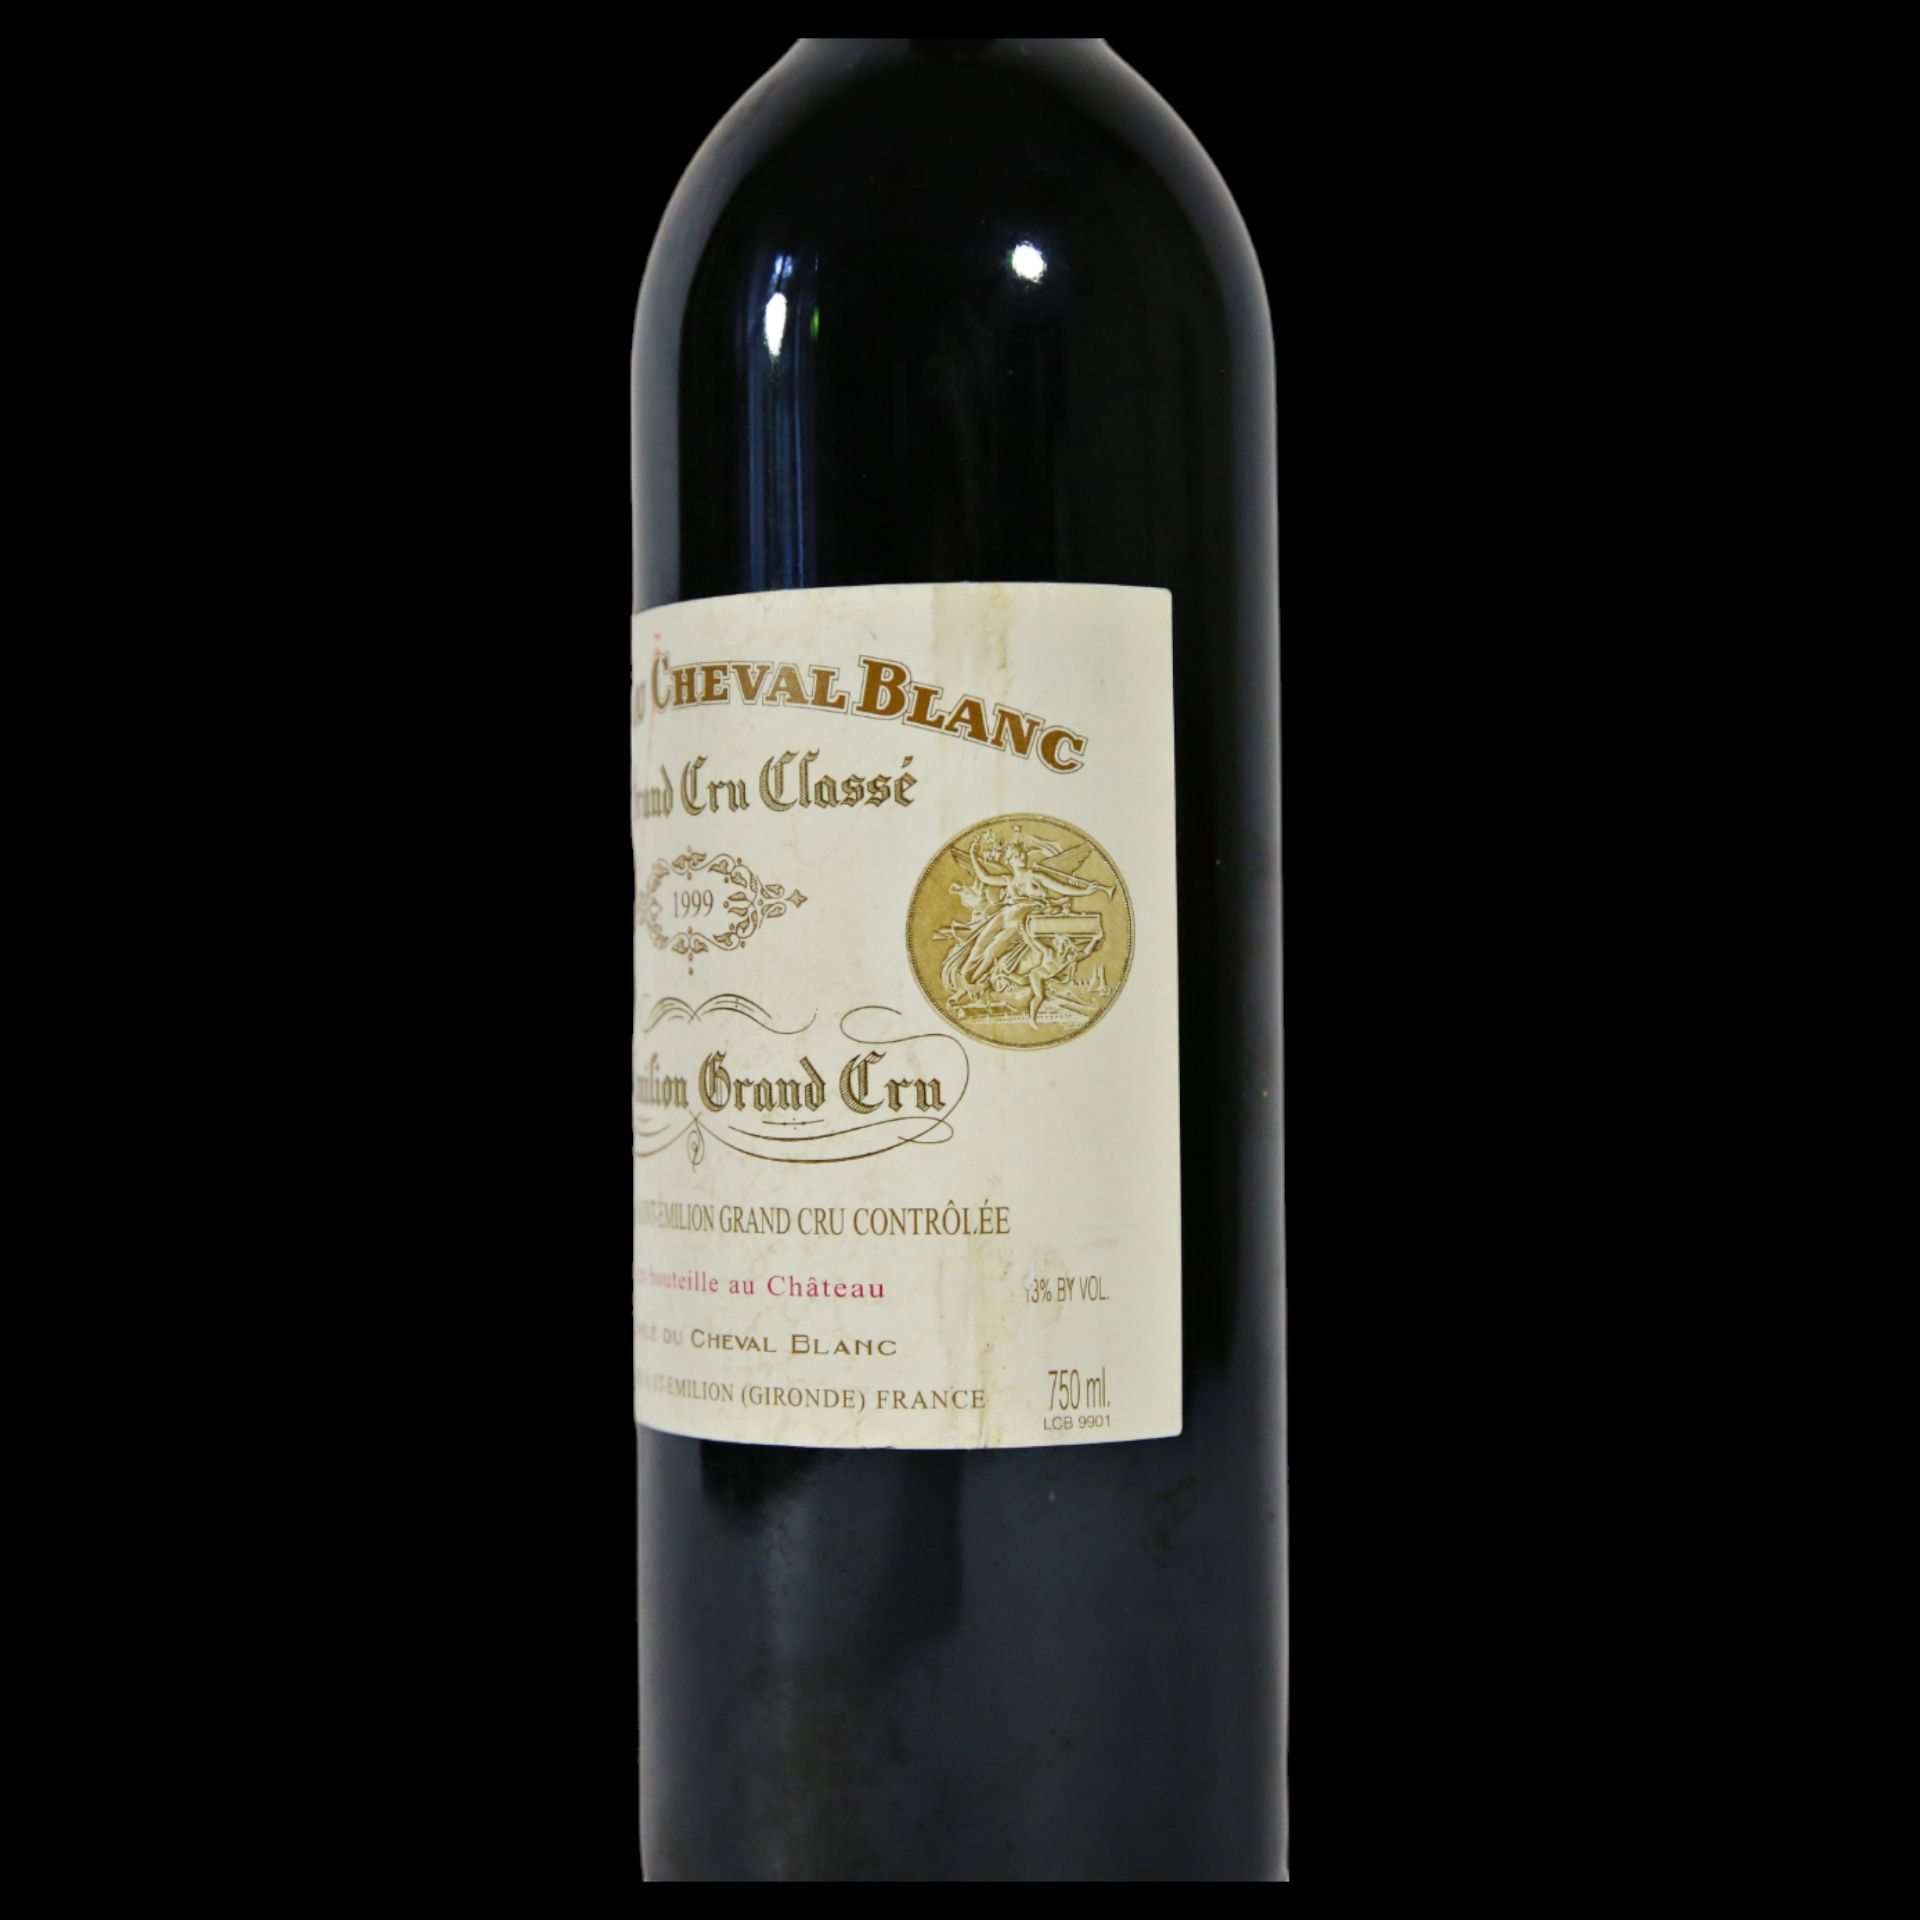 Bottle Vintage Chateau Cheval Blanc 1999, Bordeaux, Saint-Emilion Premier Grand Cru Classe. - Bild 11 aus 15